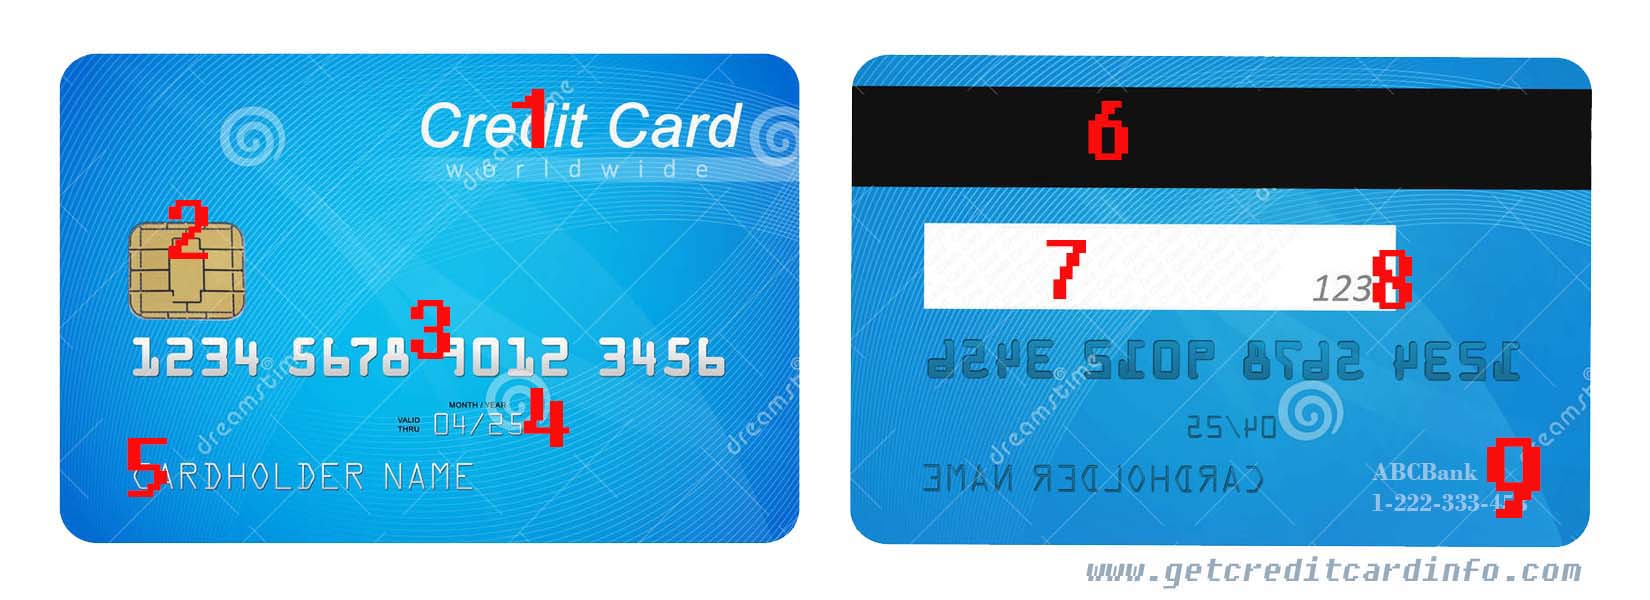 fake debit card numbers that work 2018 16 digit